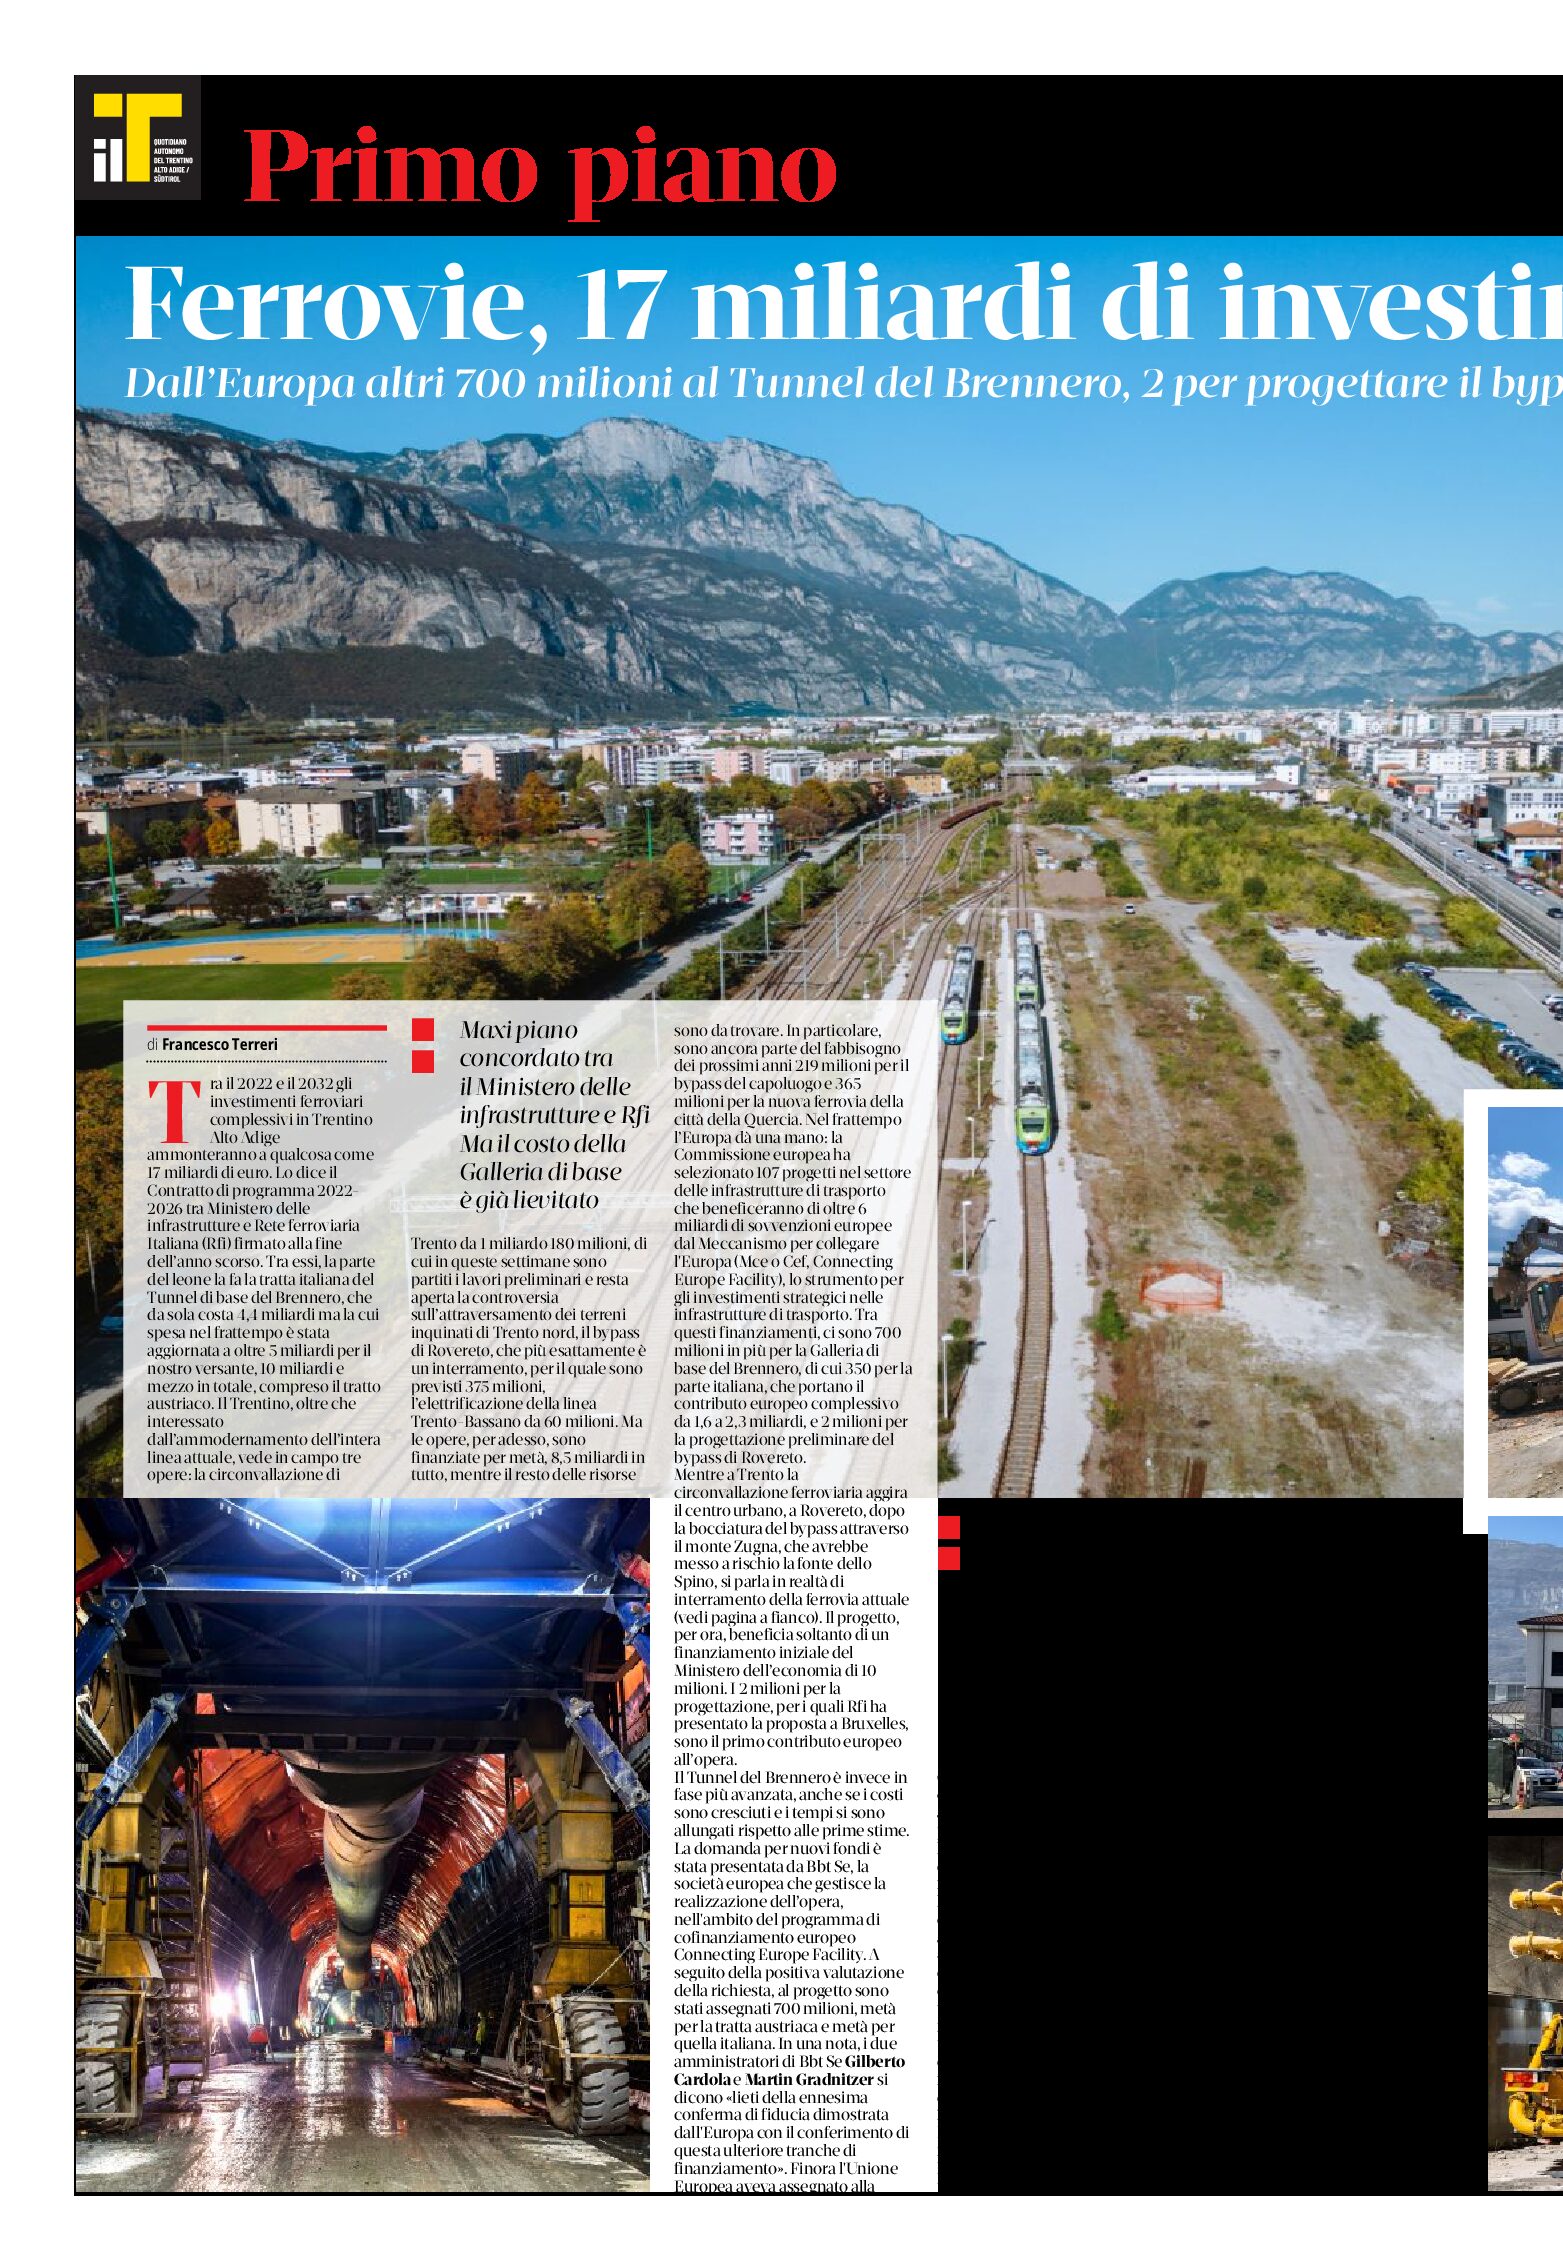 Ferrovie: 17 miliardi di investimenti complessivi in Trentino-Alto Adige